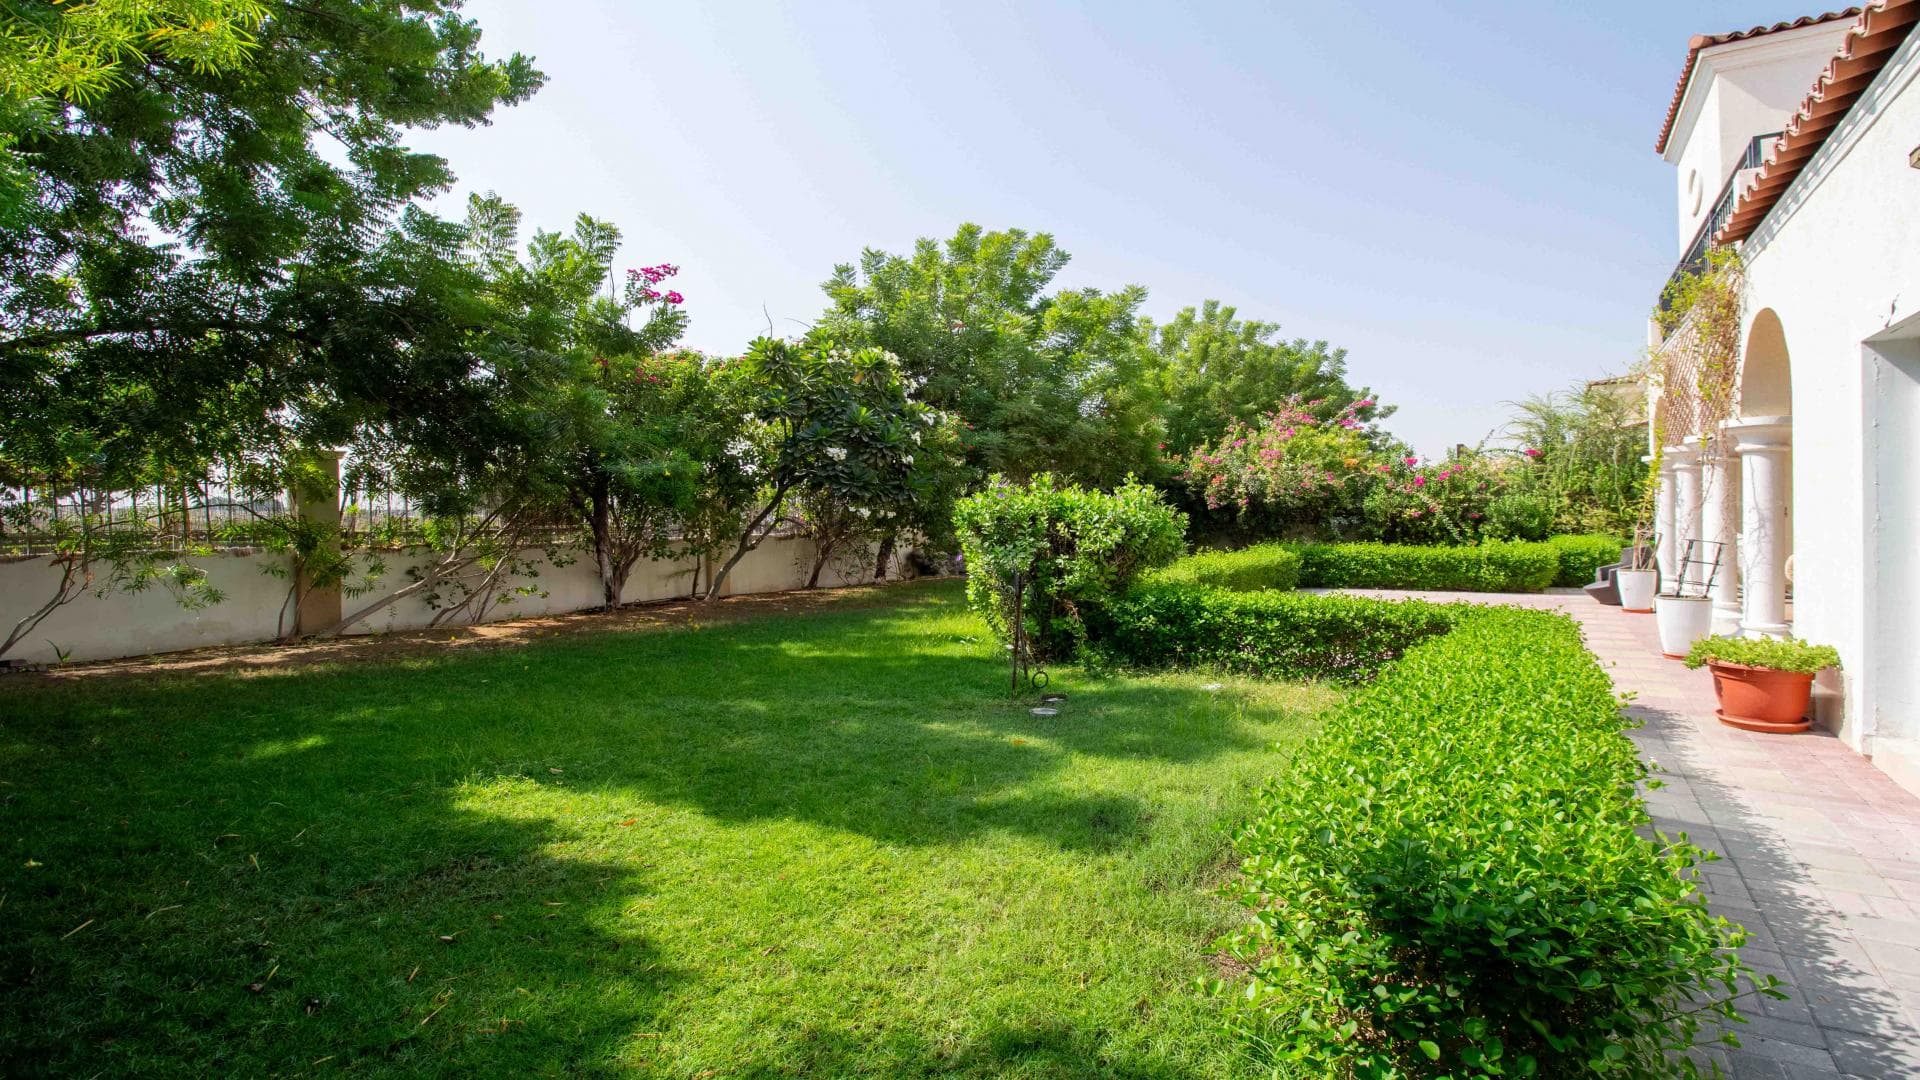 5 Bedroom Villa For Rent Al Thamam 36 Lp37870 2a5a2d4d70a5a400.jpg